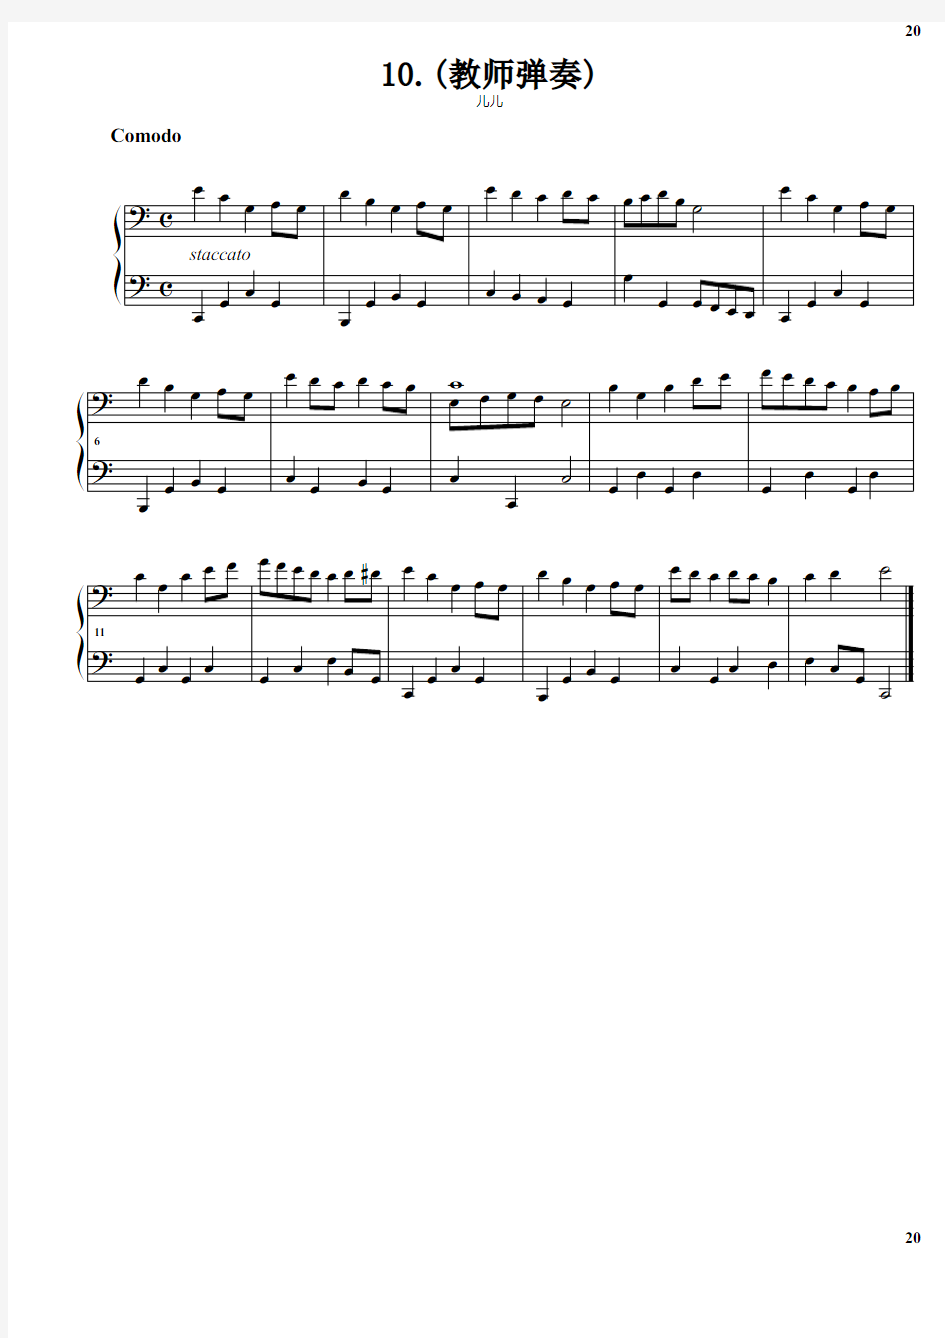 拜厄钢琴基本教程 第1阶段.10.(教师弹奏) 原版 正谱 五线谱 钢琴谱